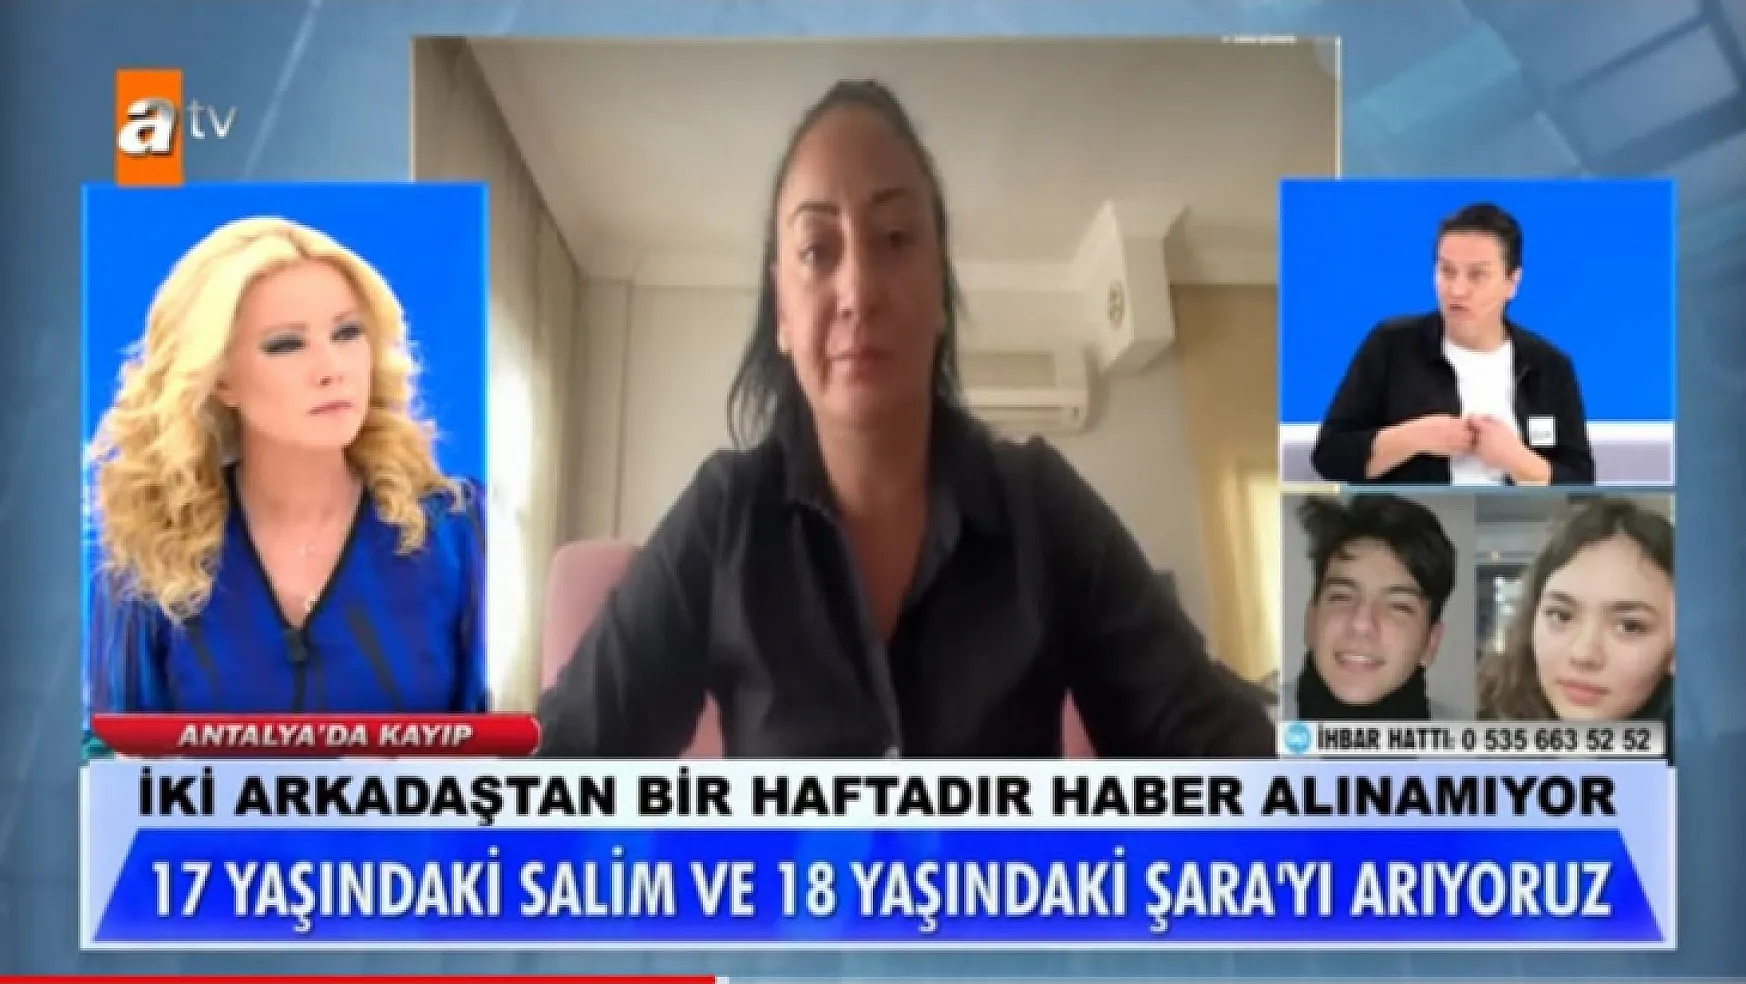 Antalya'da kaybolan iki arkadaş Fethiye'de bulundu